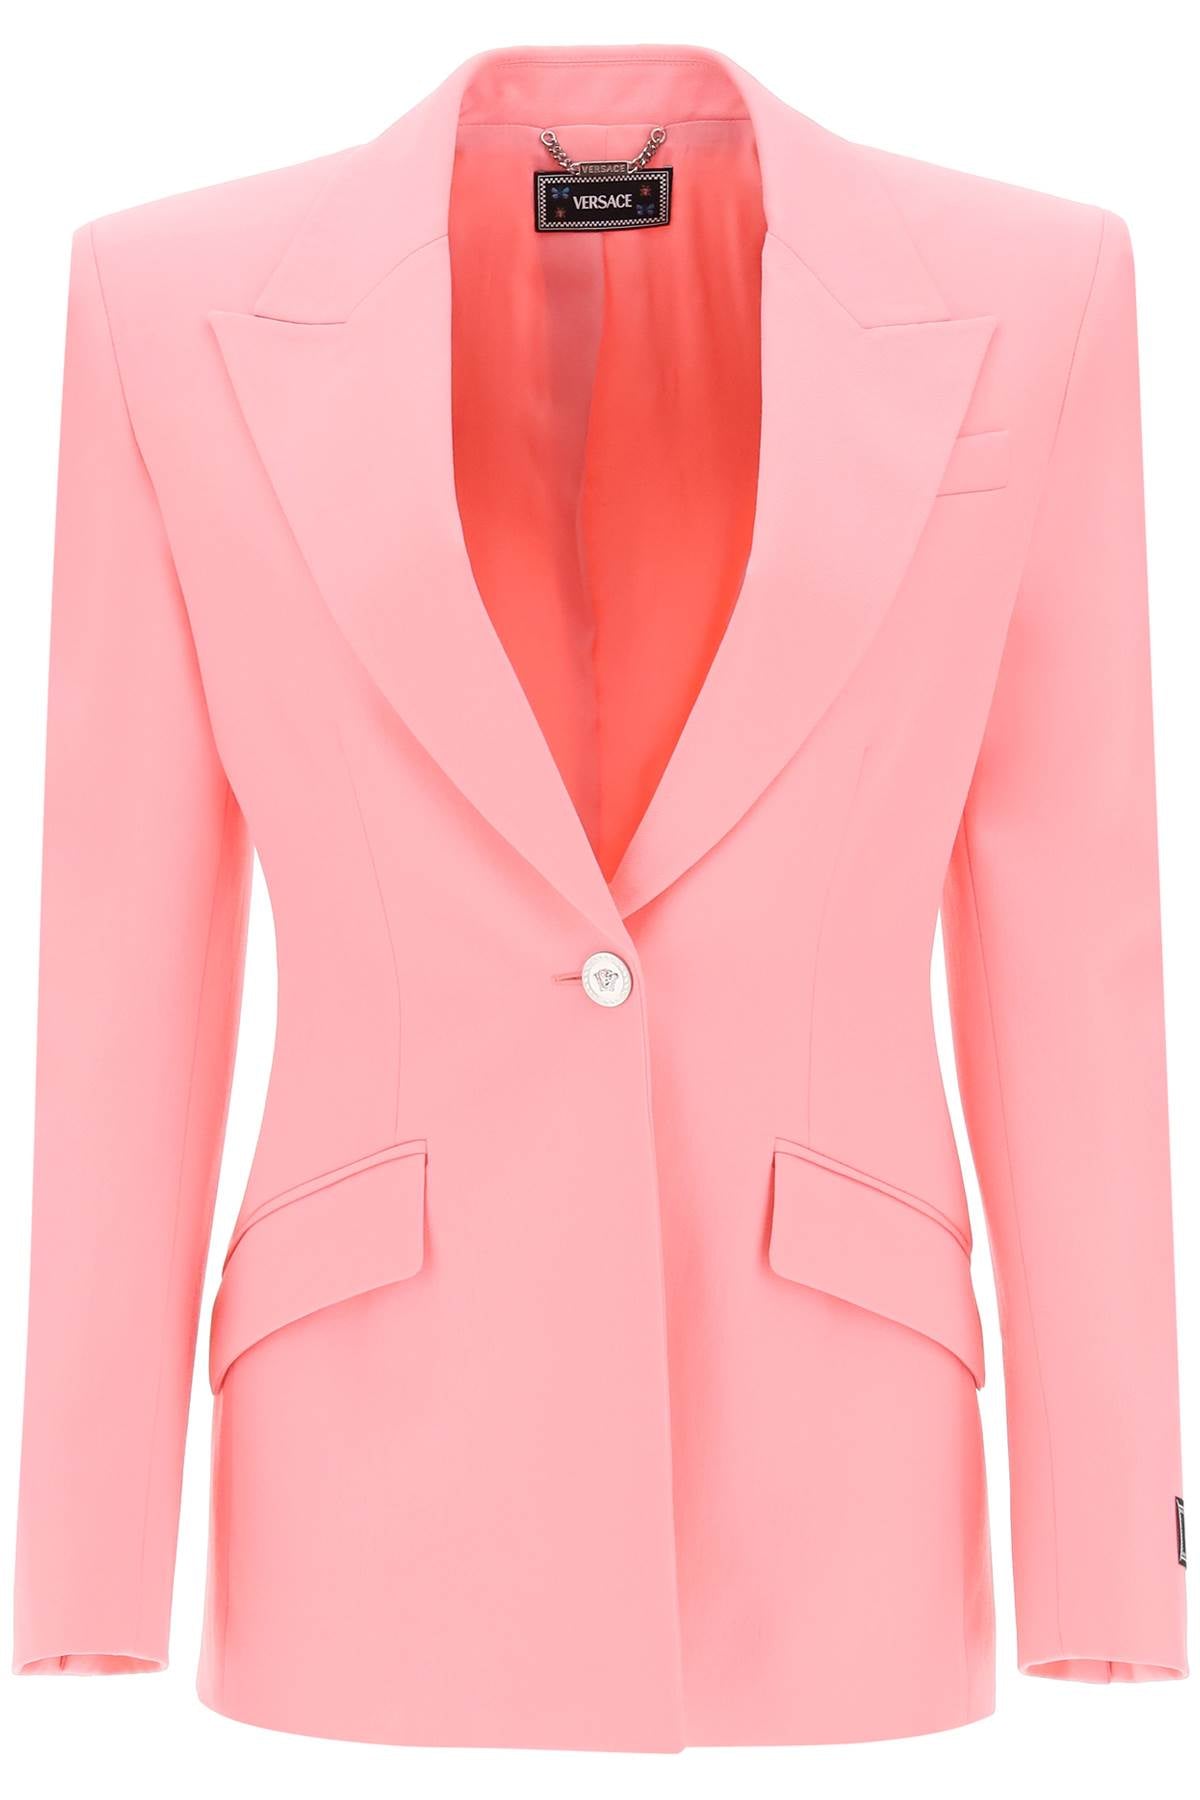 Versace single-breasted medusa jacket-0